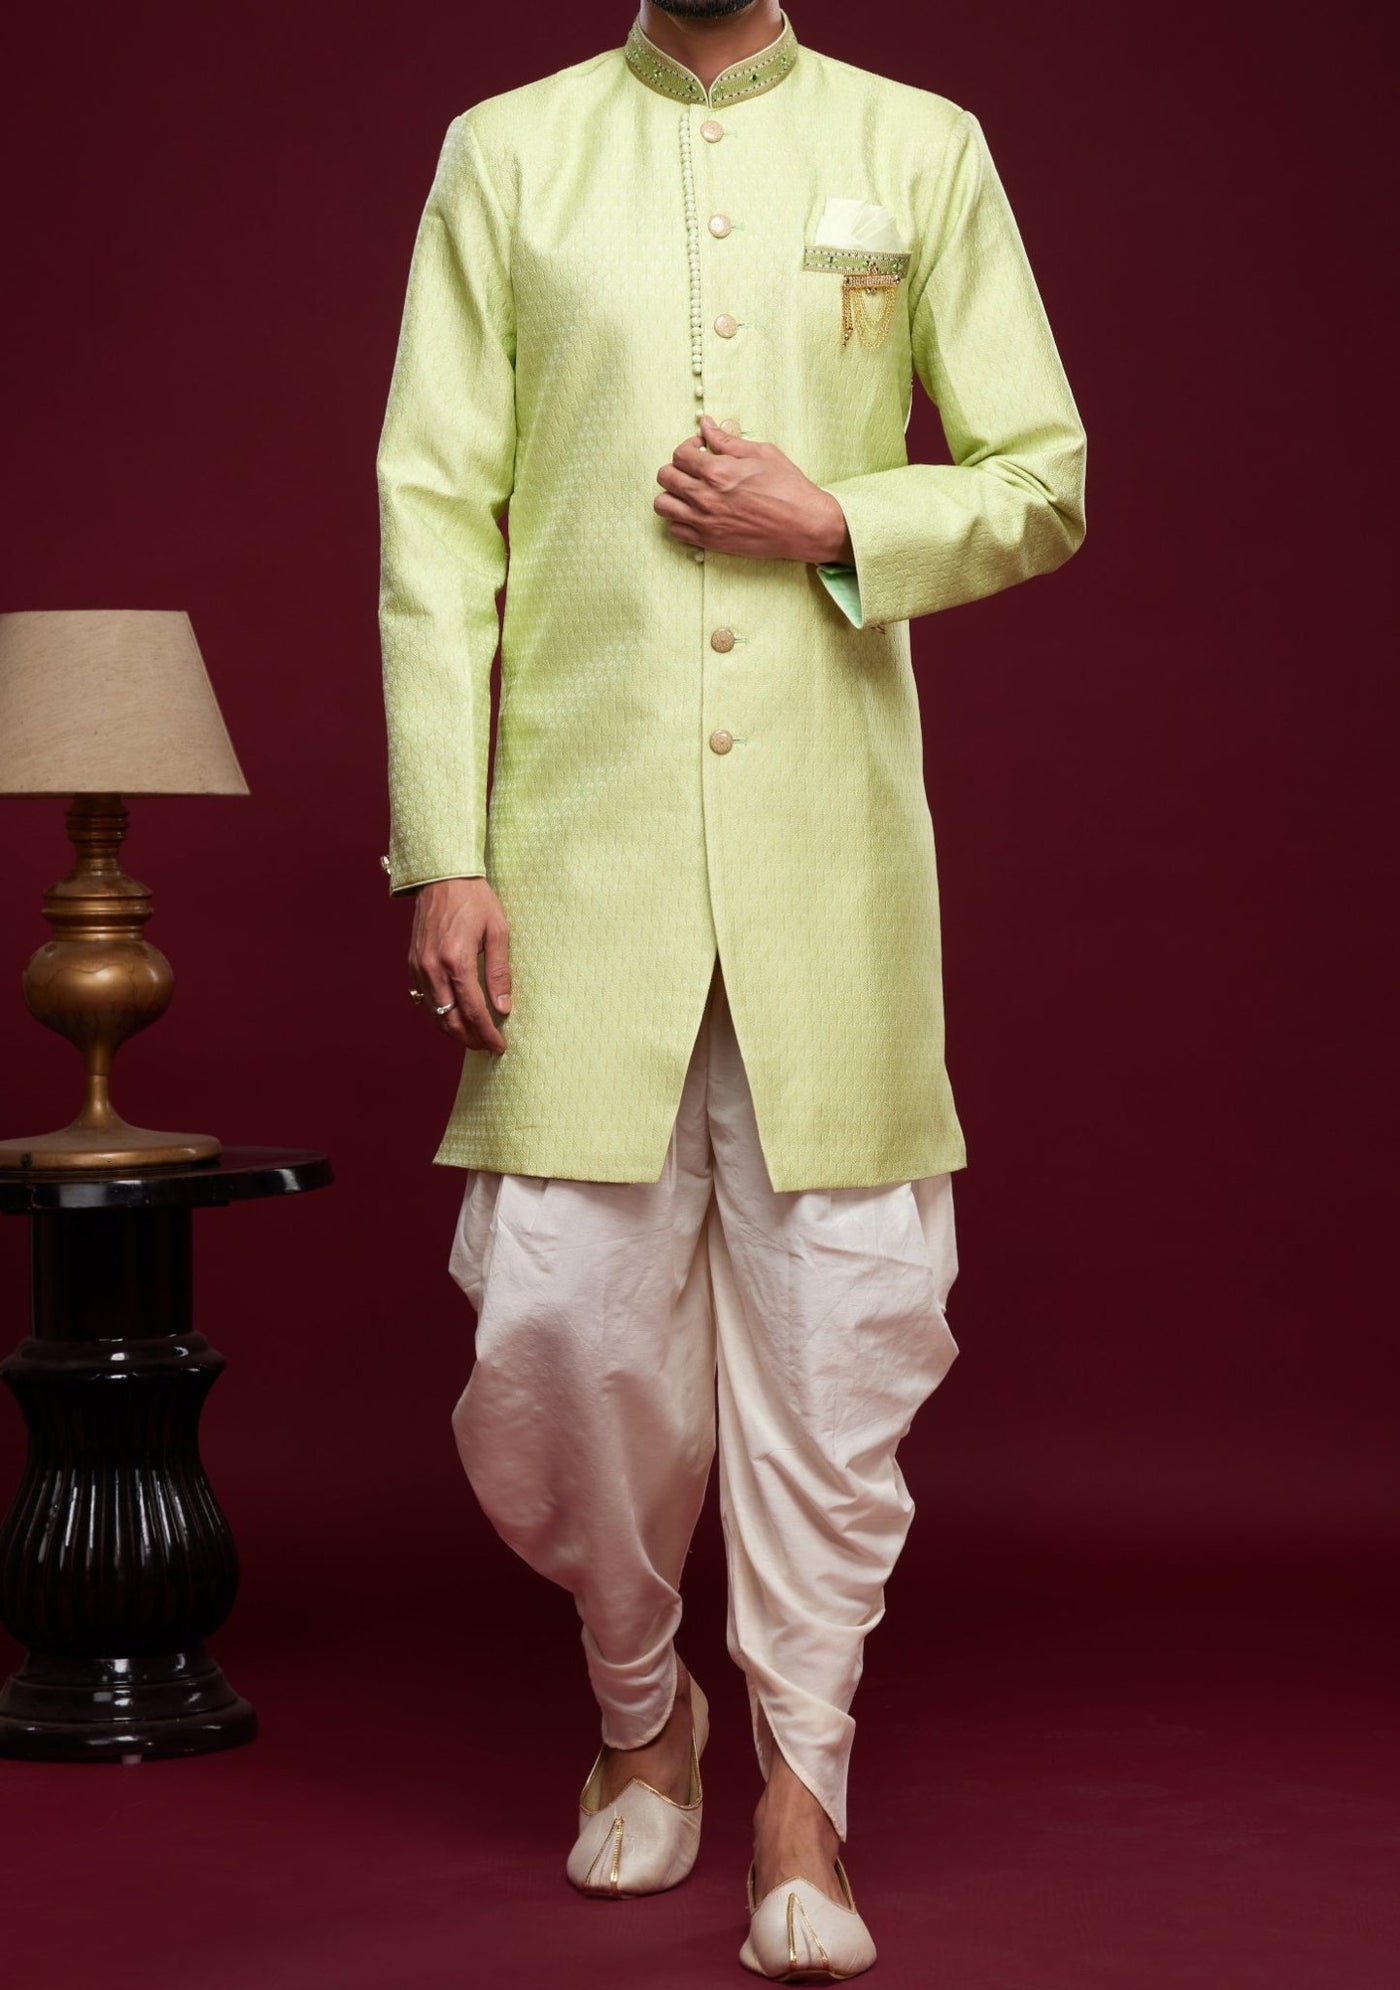 Men's Semi Indo Western Party Wear Sherwani Suit - db23841